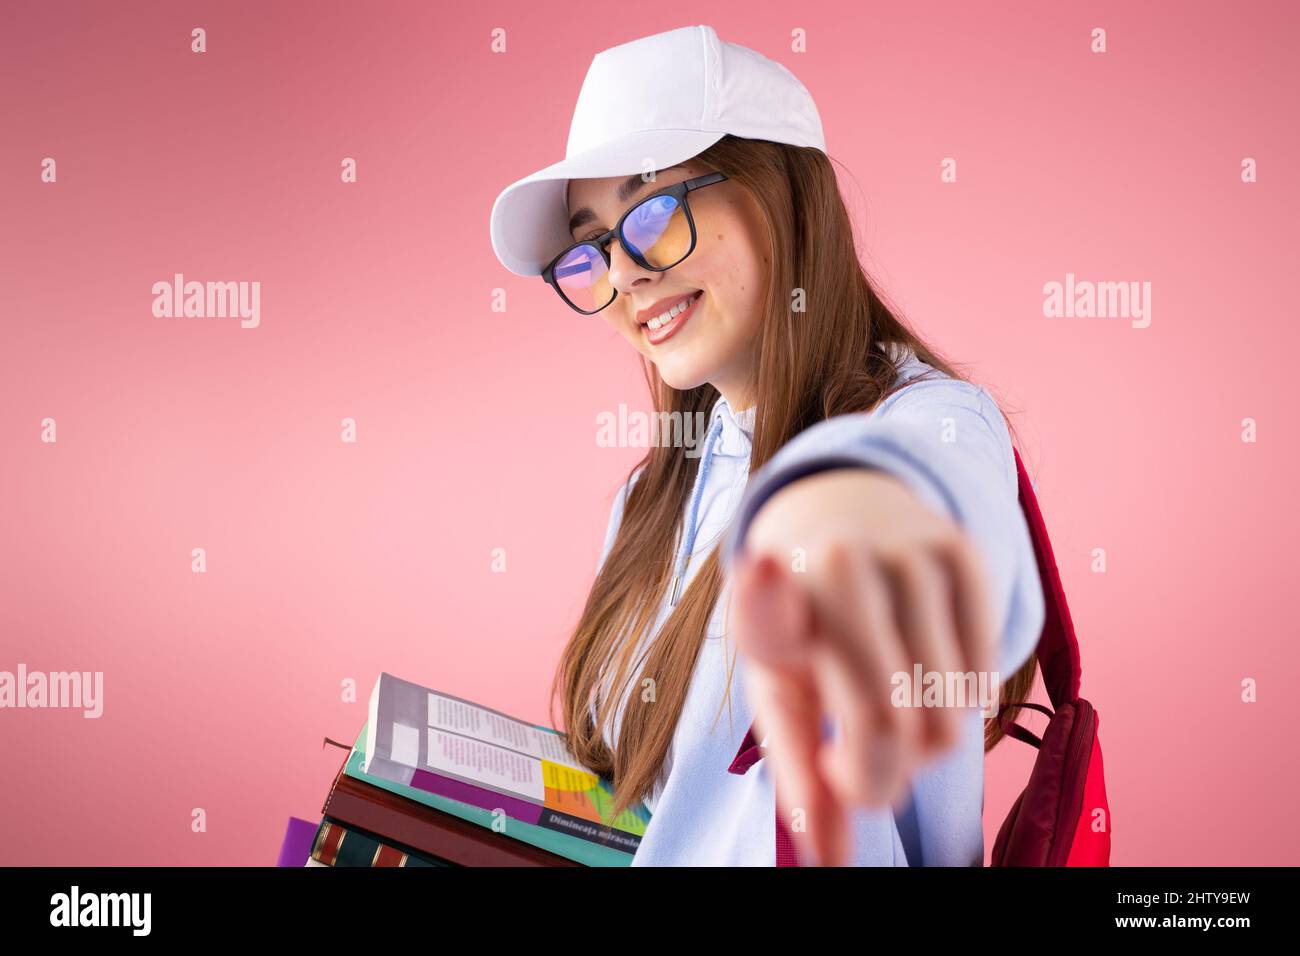 Cool jolie blonde fille d'école souriant portant des lunettes et une  casquette tenant des livres et pointant avec un doigt sur l'appareil photo  Photo Stock - Alamy